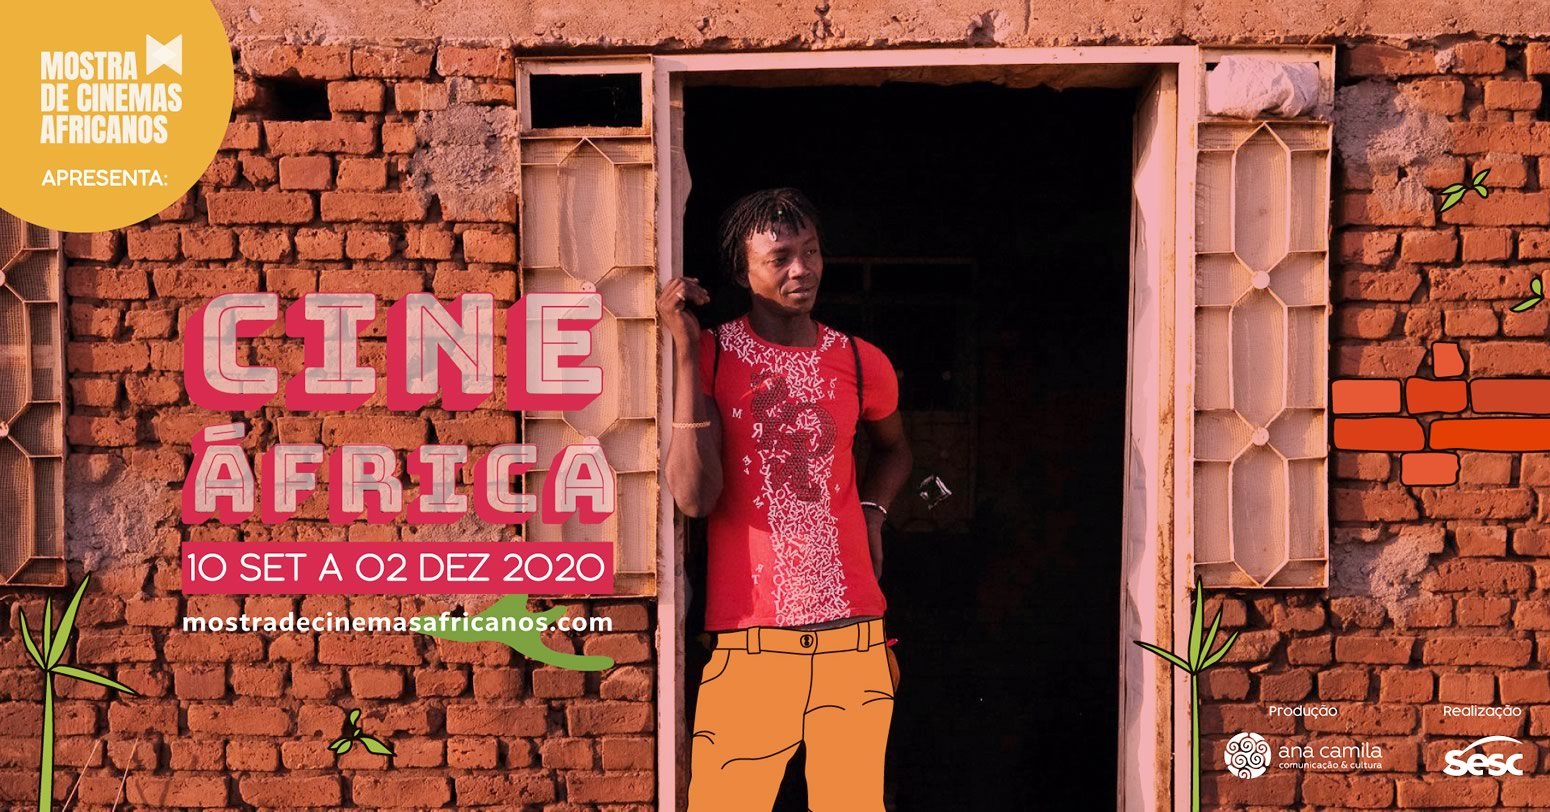 CineSesc estreia nova temporada do Cine África online em setembro